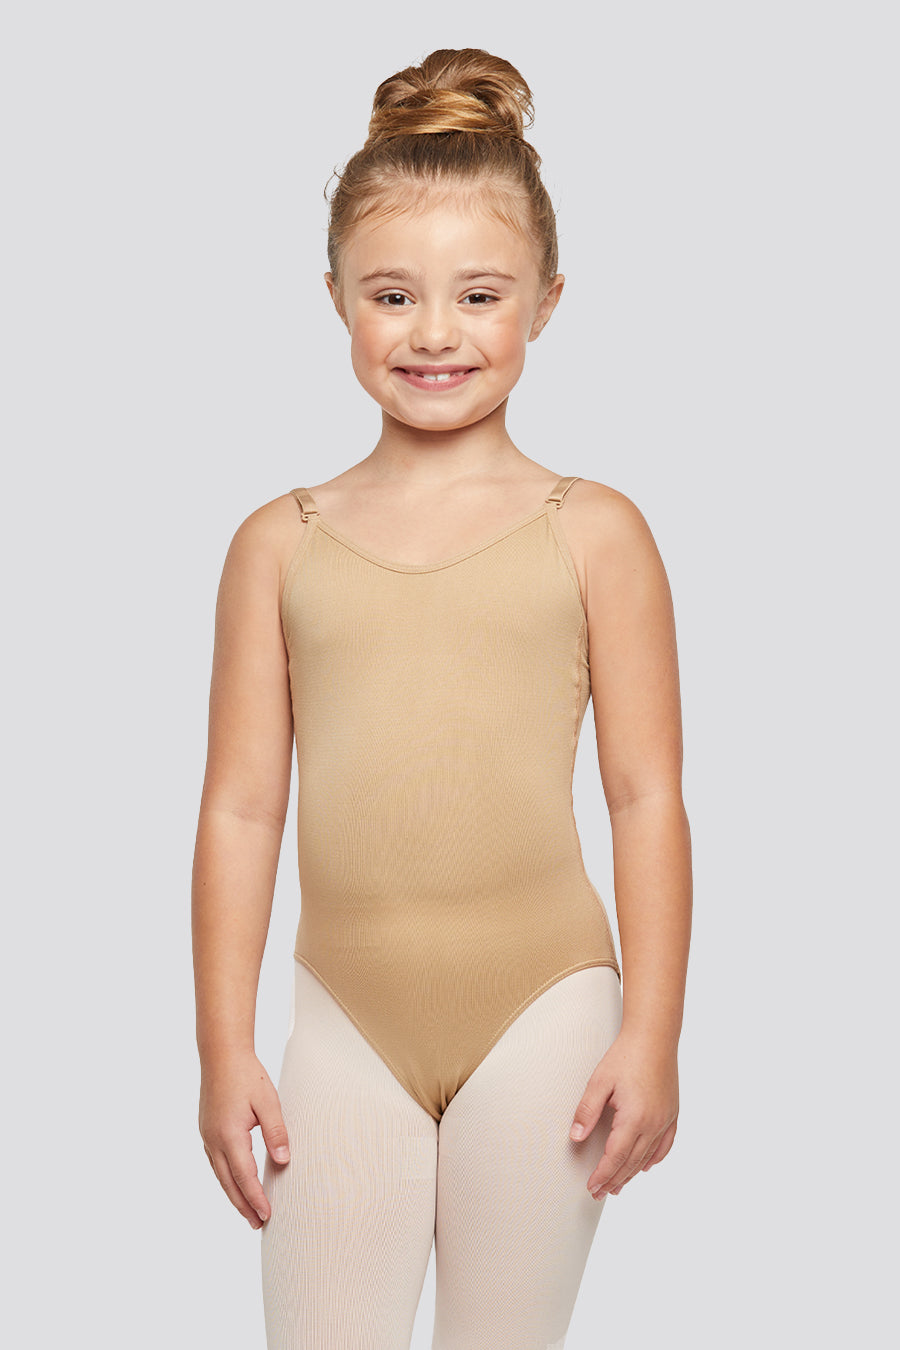 Nude Seamless Underwear Ballet Dance Leotard Camisole Bodysuit For Kids  Girls